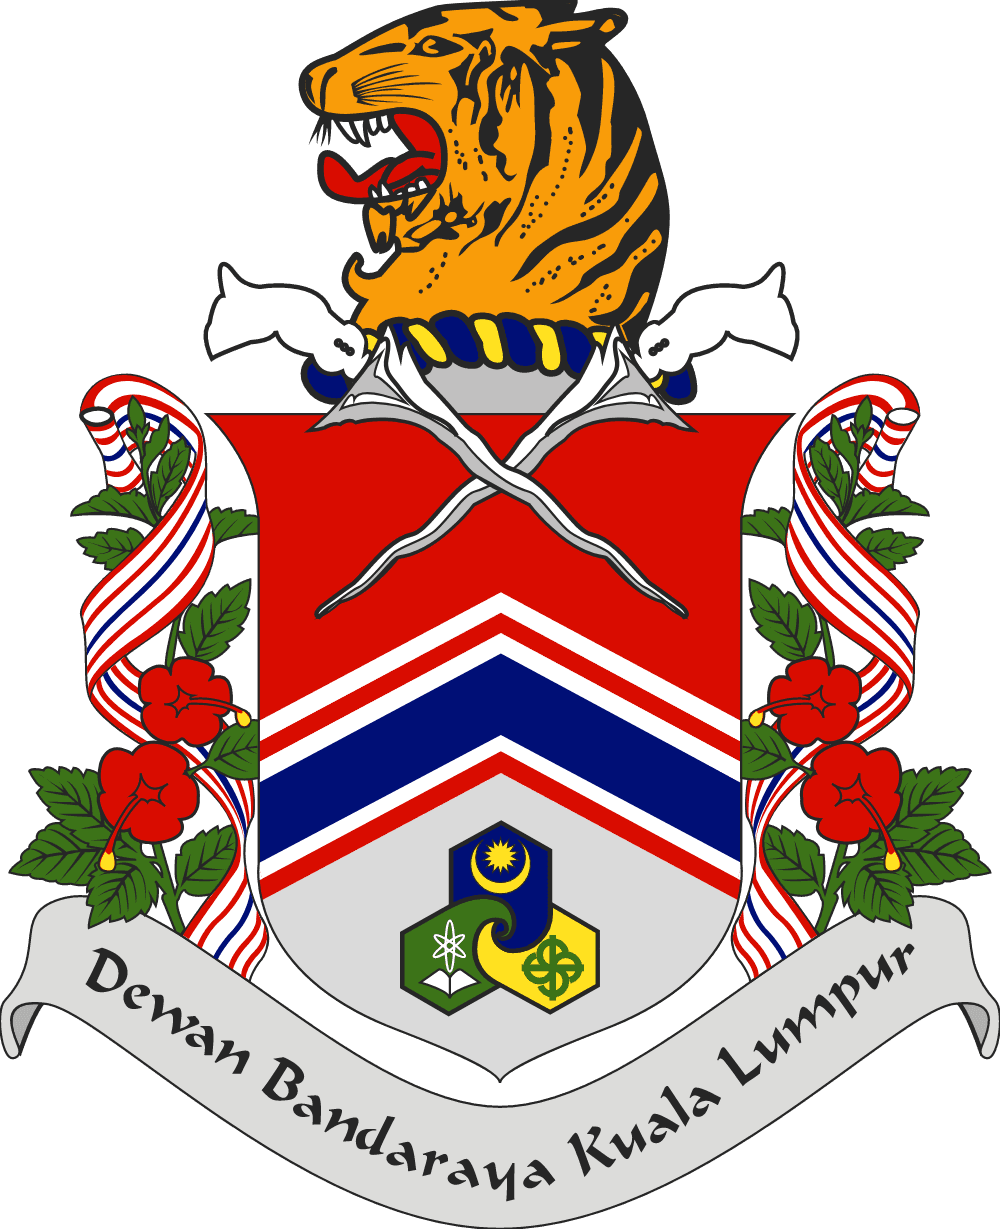 Dewan Bandaraya Kuala Lumpur Logo download